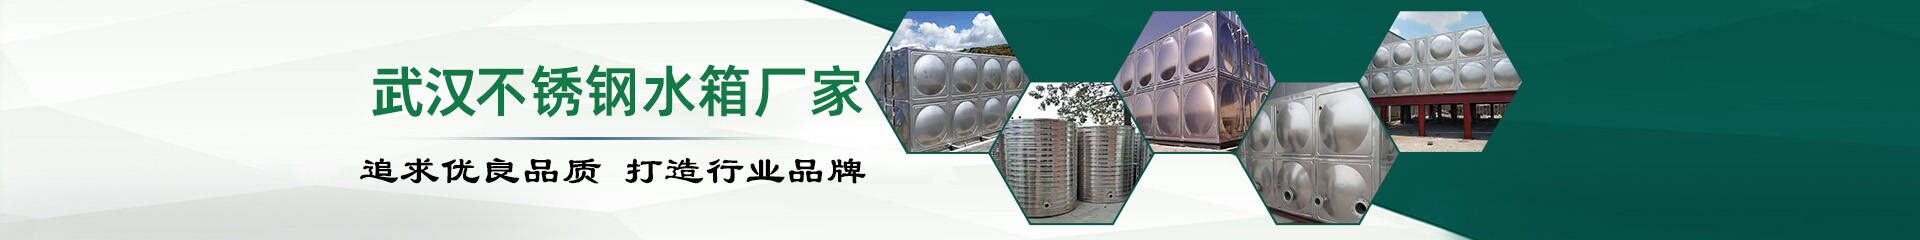 箱泵一体生活水箱_武汉不锈钢水箱生产厂家